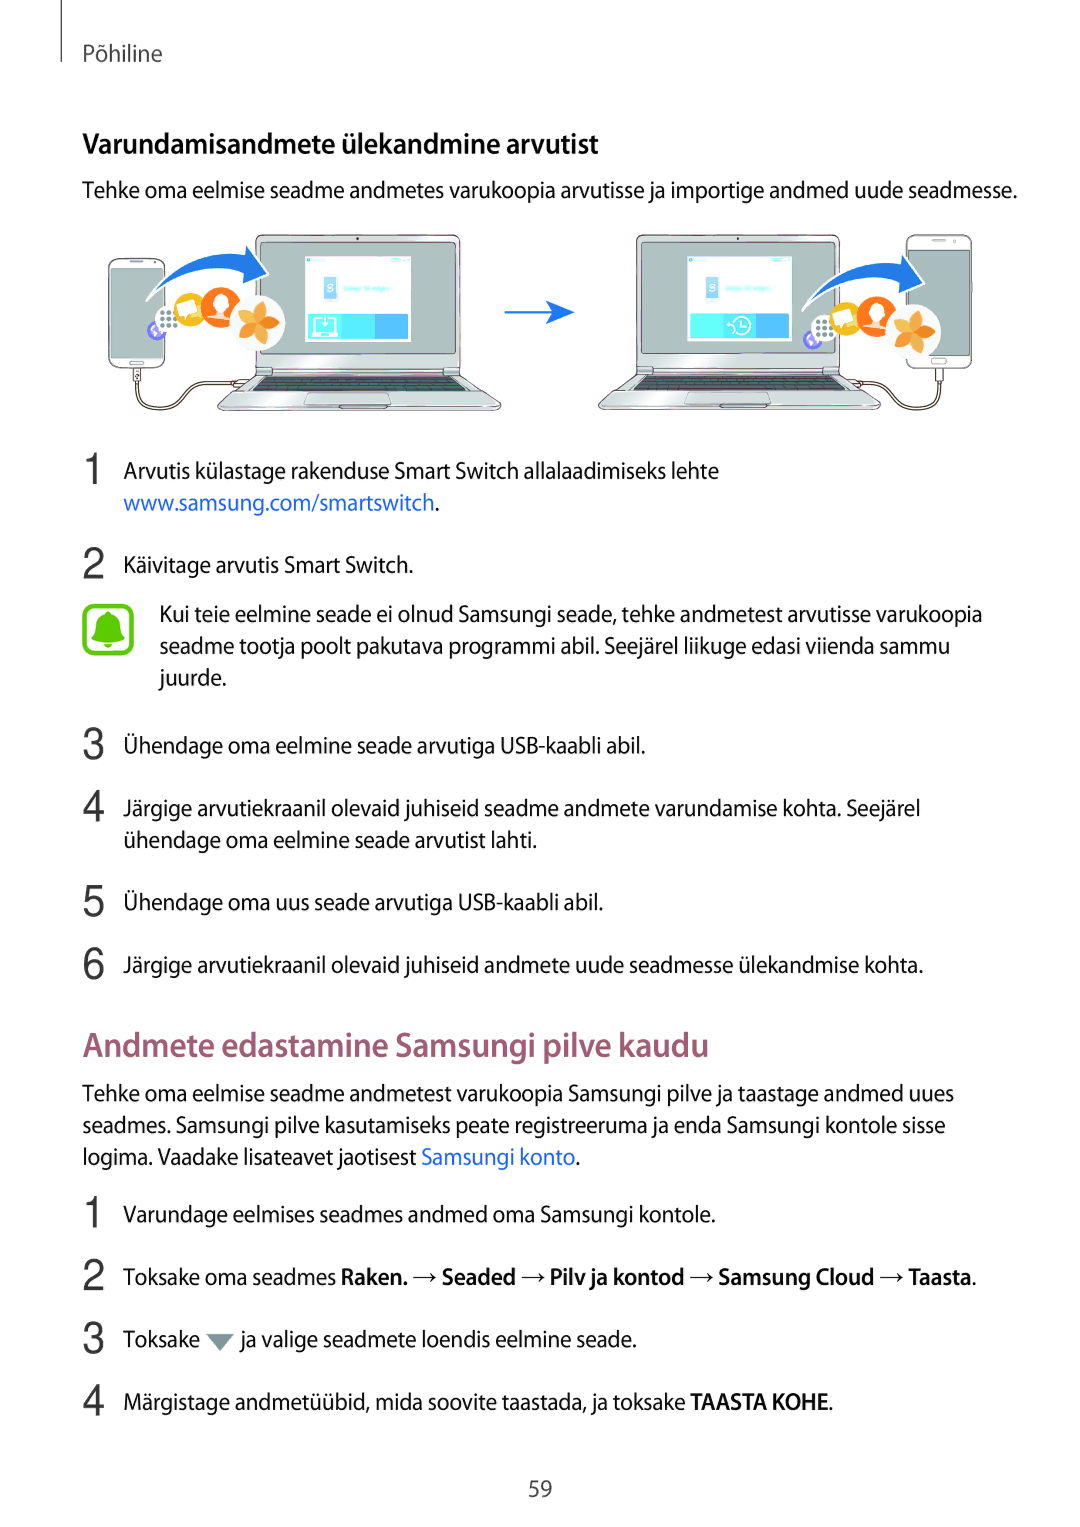 Samsung SM-A520FZKASEB, SM-A520FZIASEB Andmete edastamine Samsungi pilve kaudu, Varundamisandmete ülekandmine arvutist 